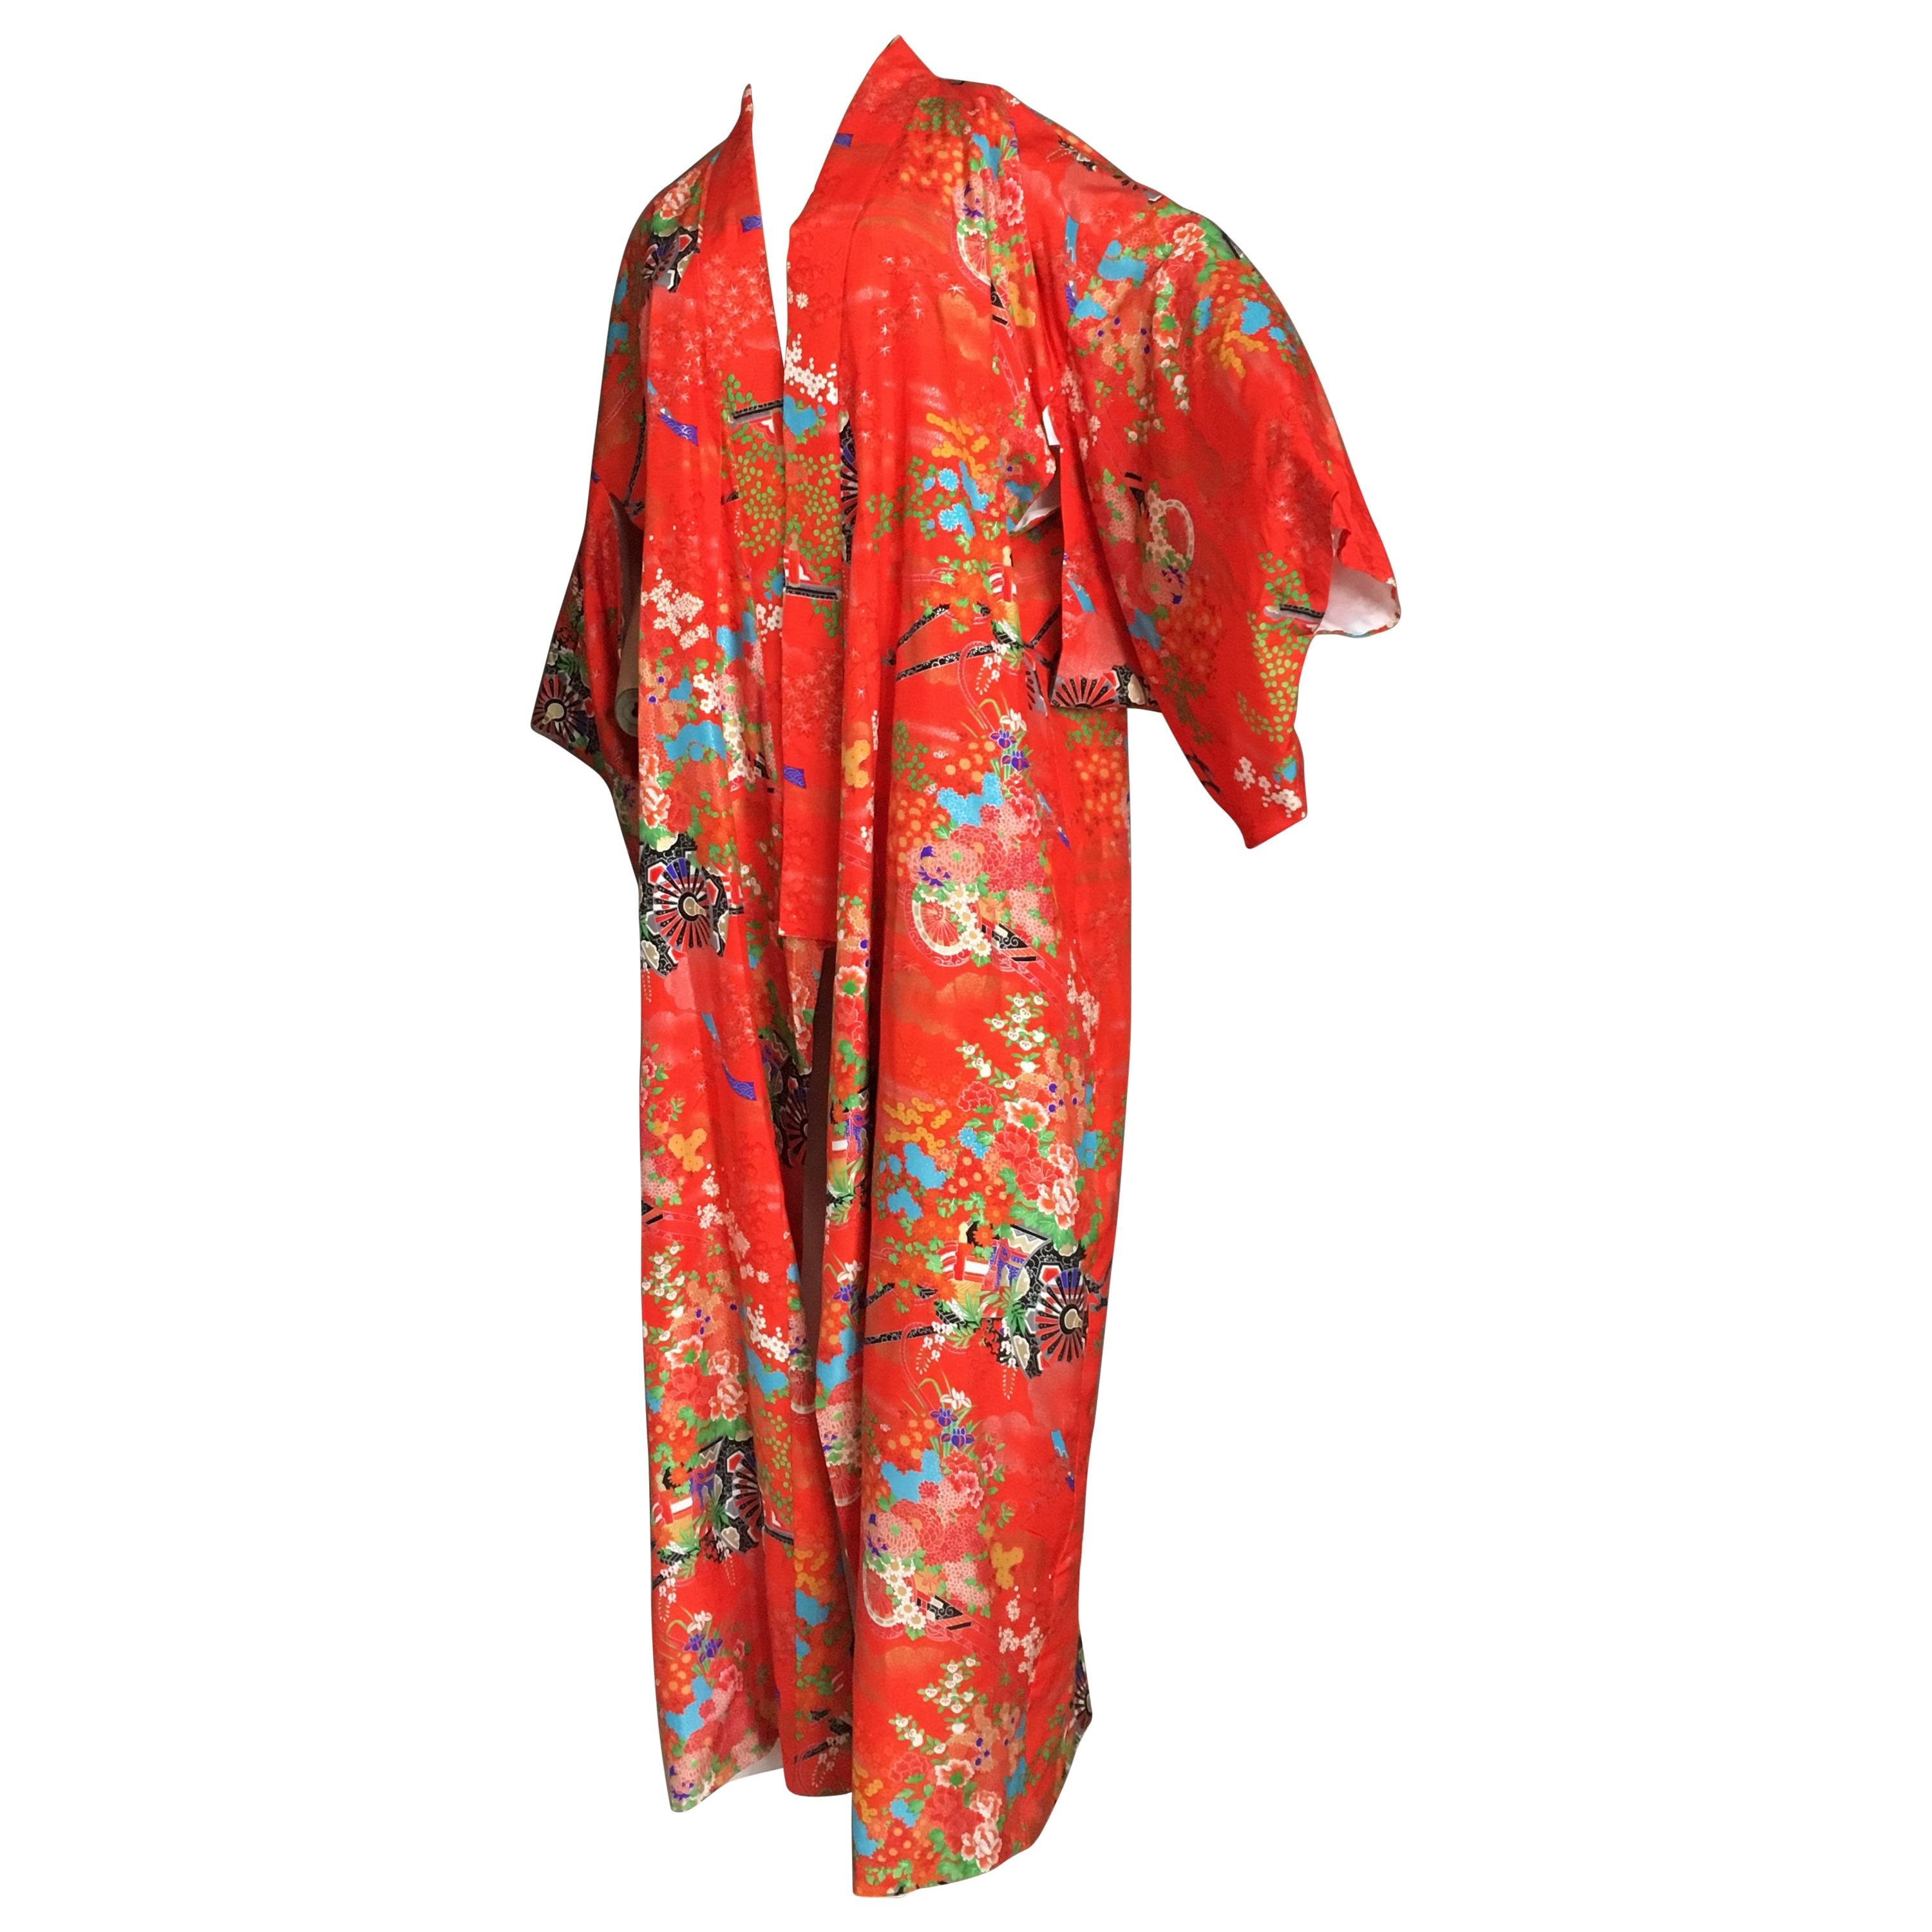 Ichiban Open Kimono Robe Red & Orange, Japan , 1960s For Sale